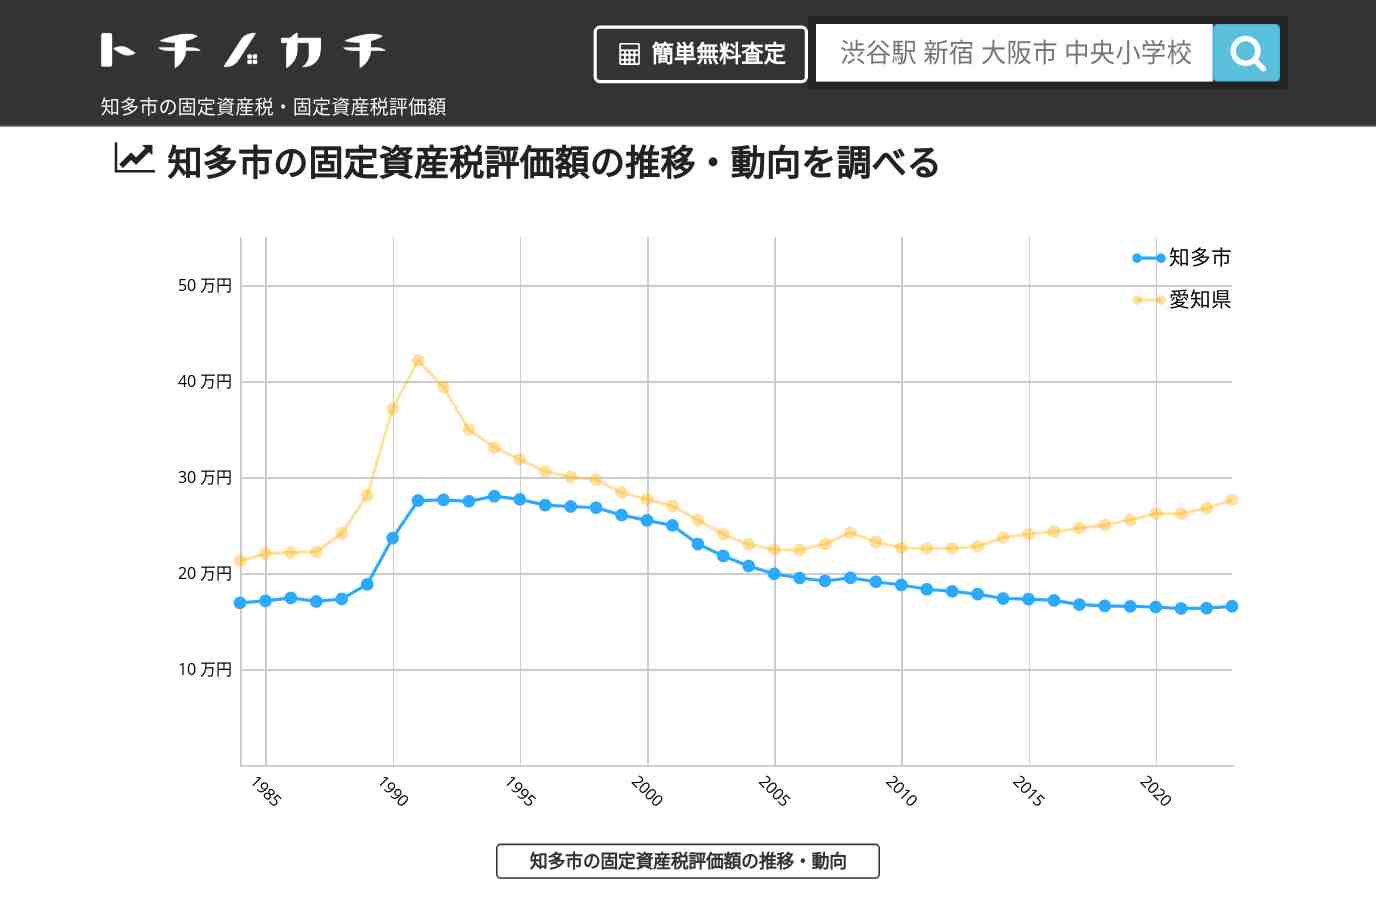 八幡中学校(愛知県 知多市)周辺の固定資産税・固定資産税評価額 | トチノカチ